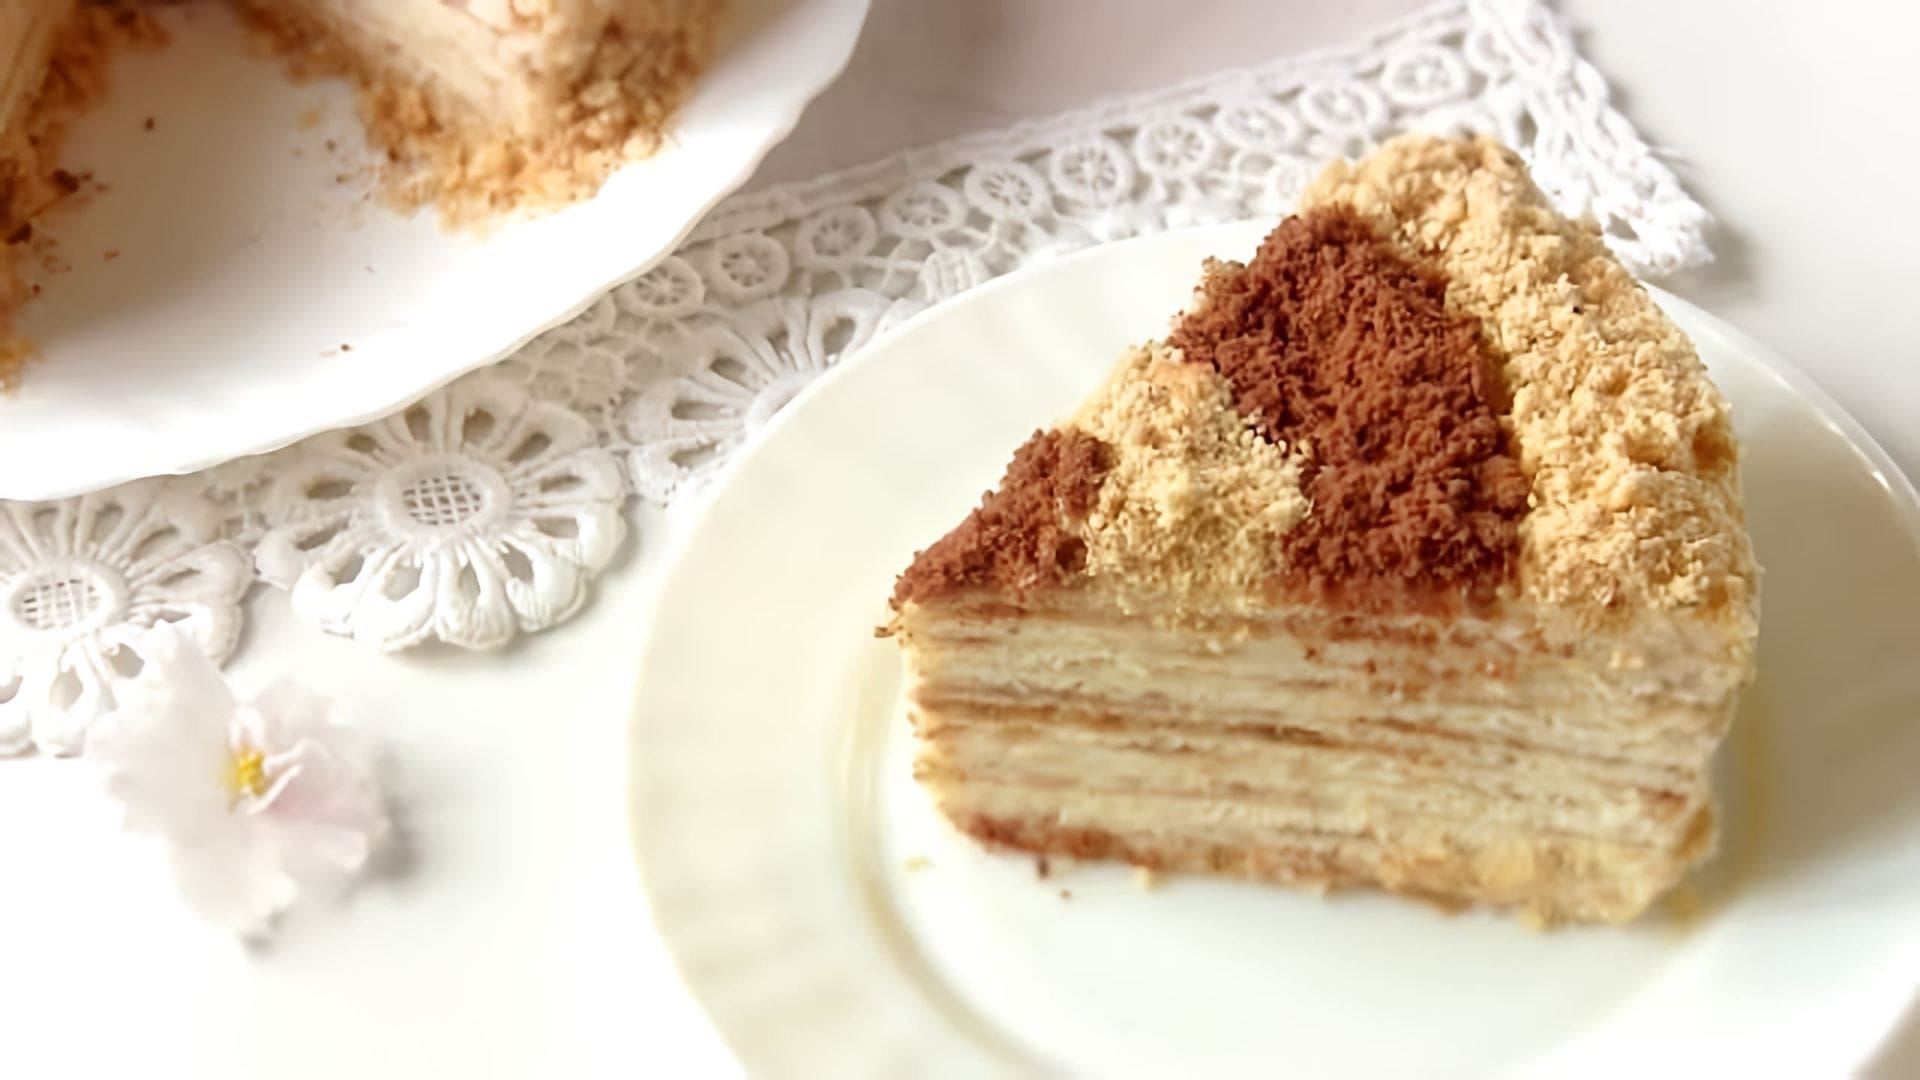 В этом видео демонстрируется рецепт приготовления торта "Сметанник" на сковороде